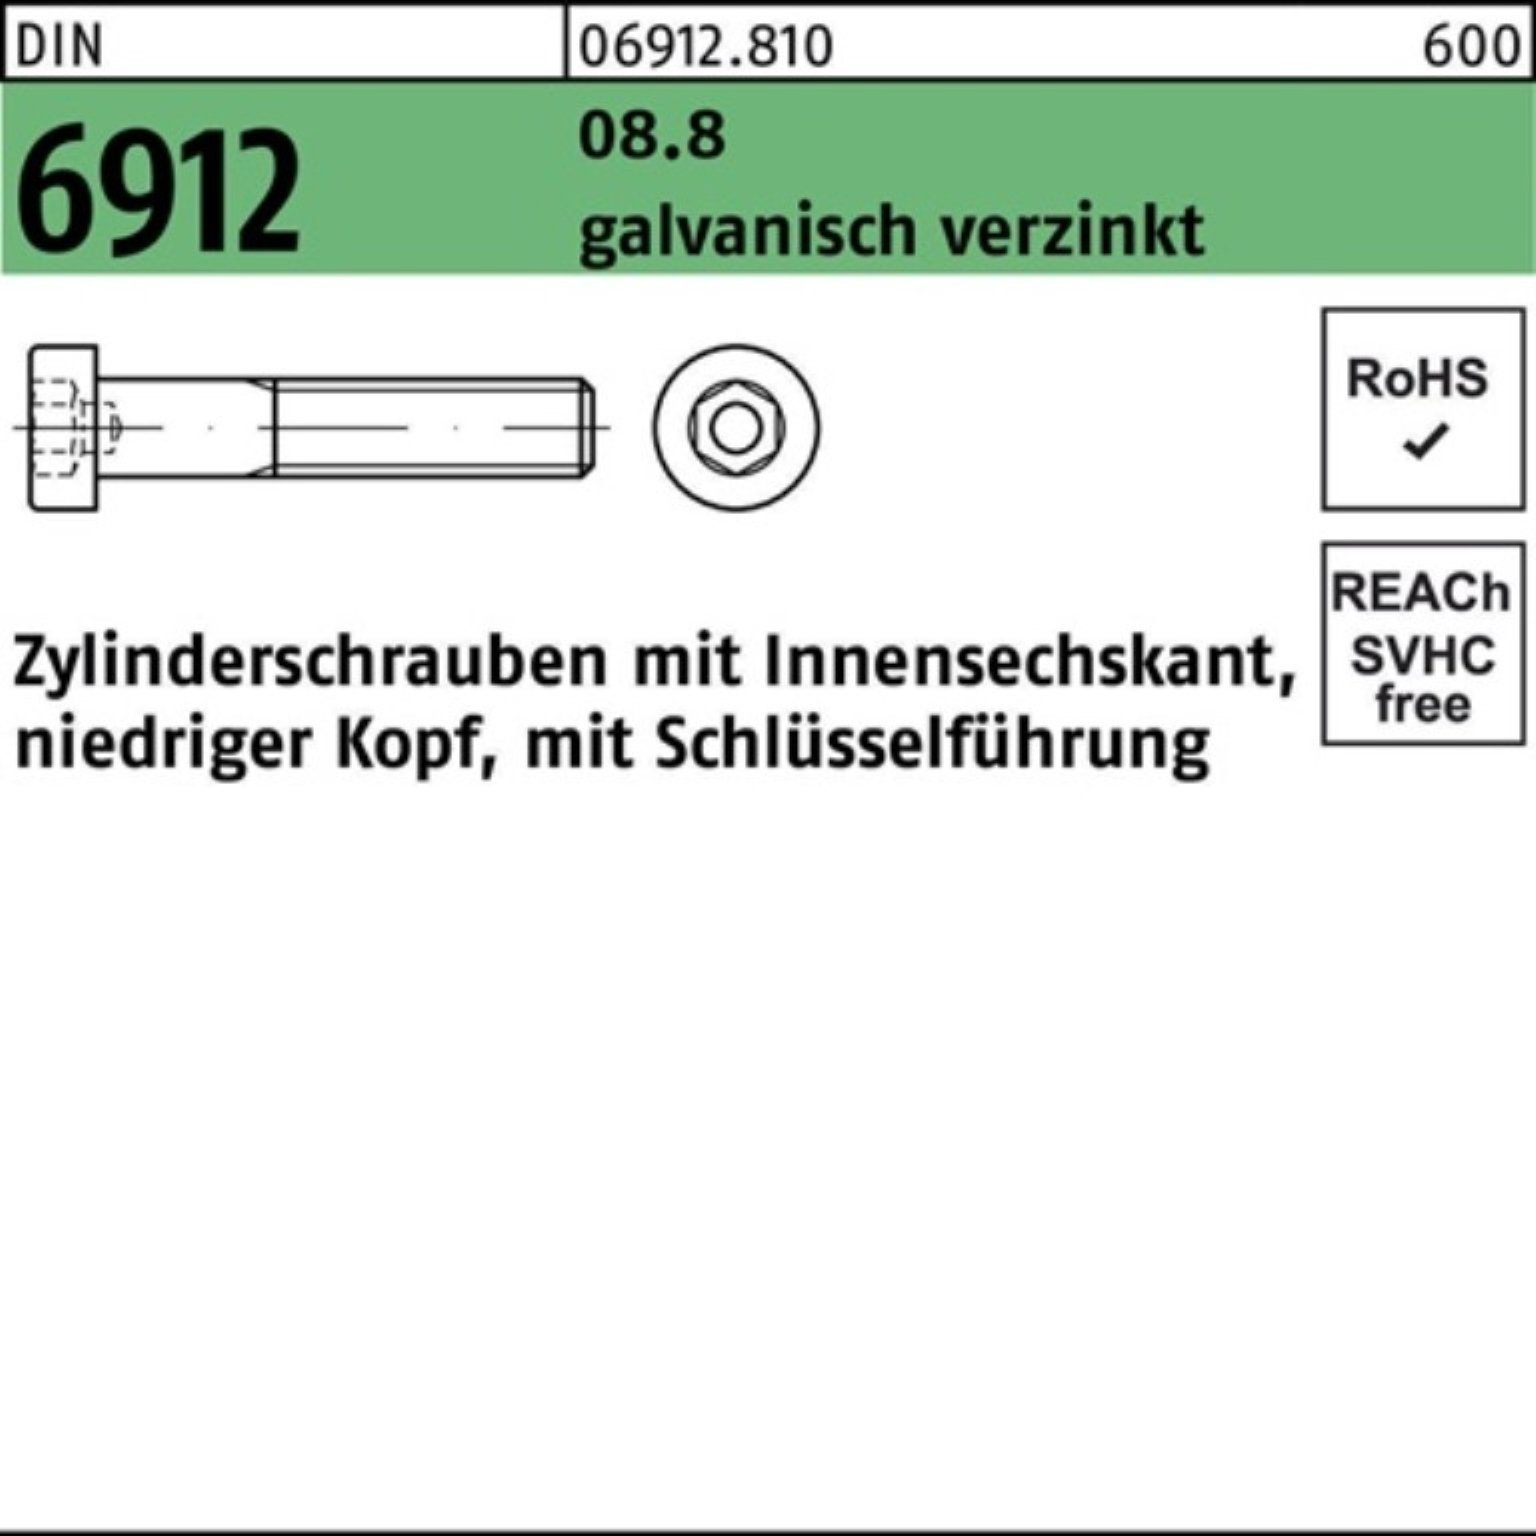 Zylinderschraube 100er 5 M12x80 DIN Reyher Innen-6kt 6912 galv.verz. Zylinderschraube Pack 8.8